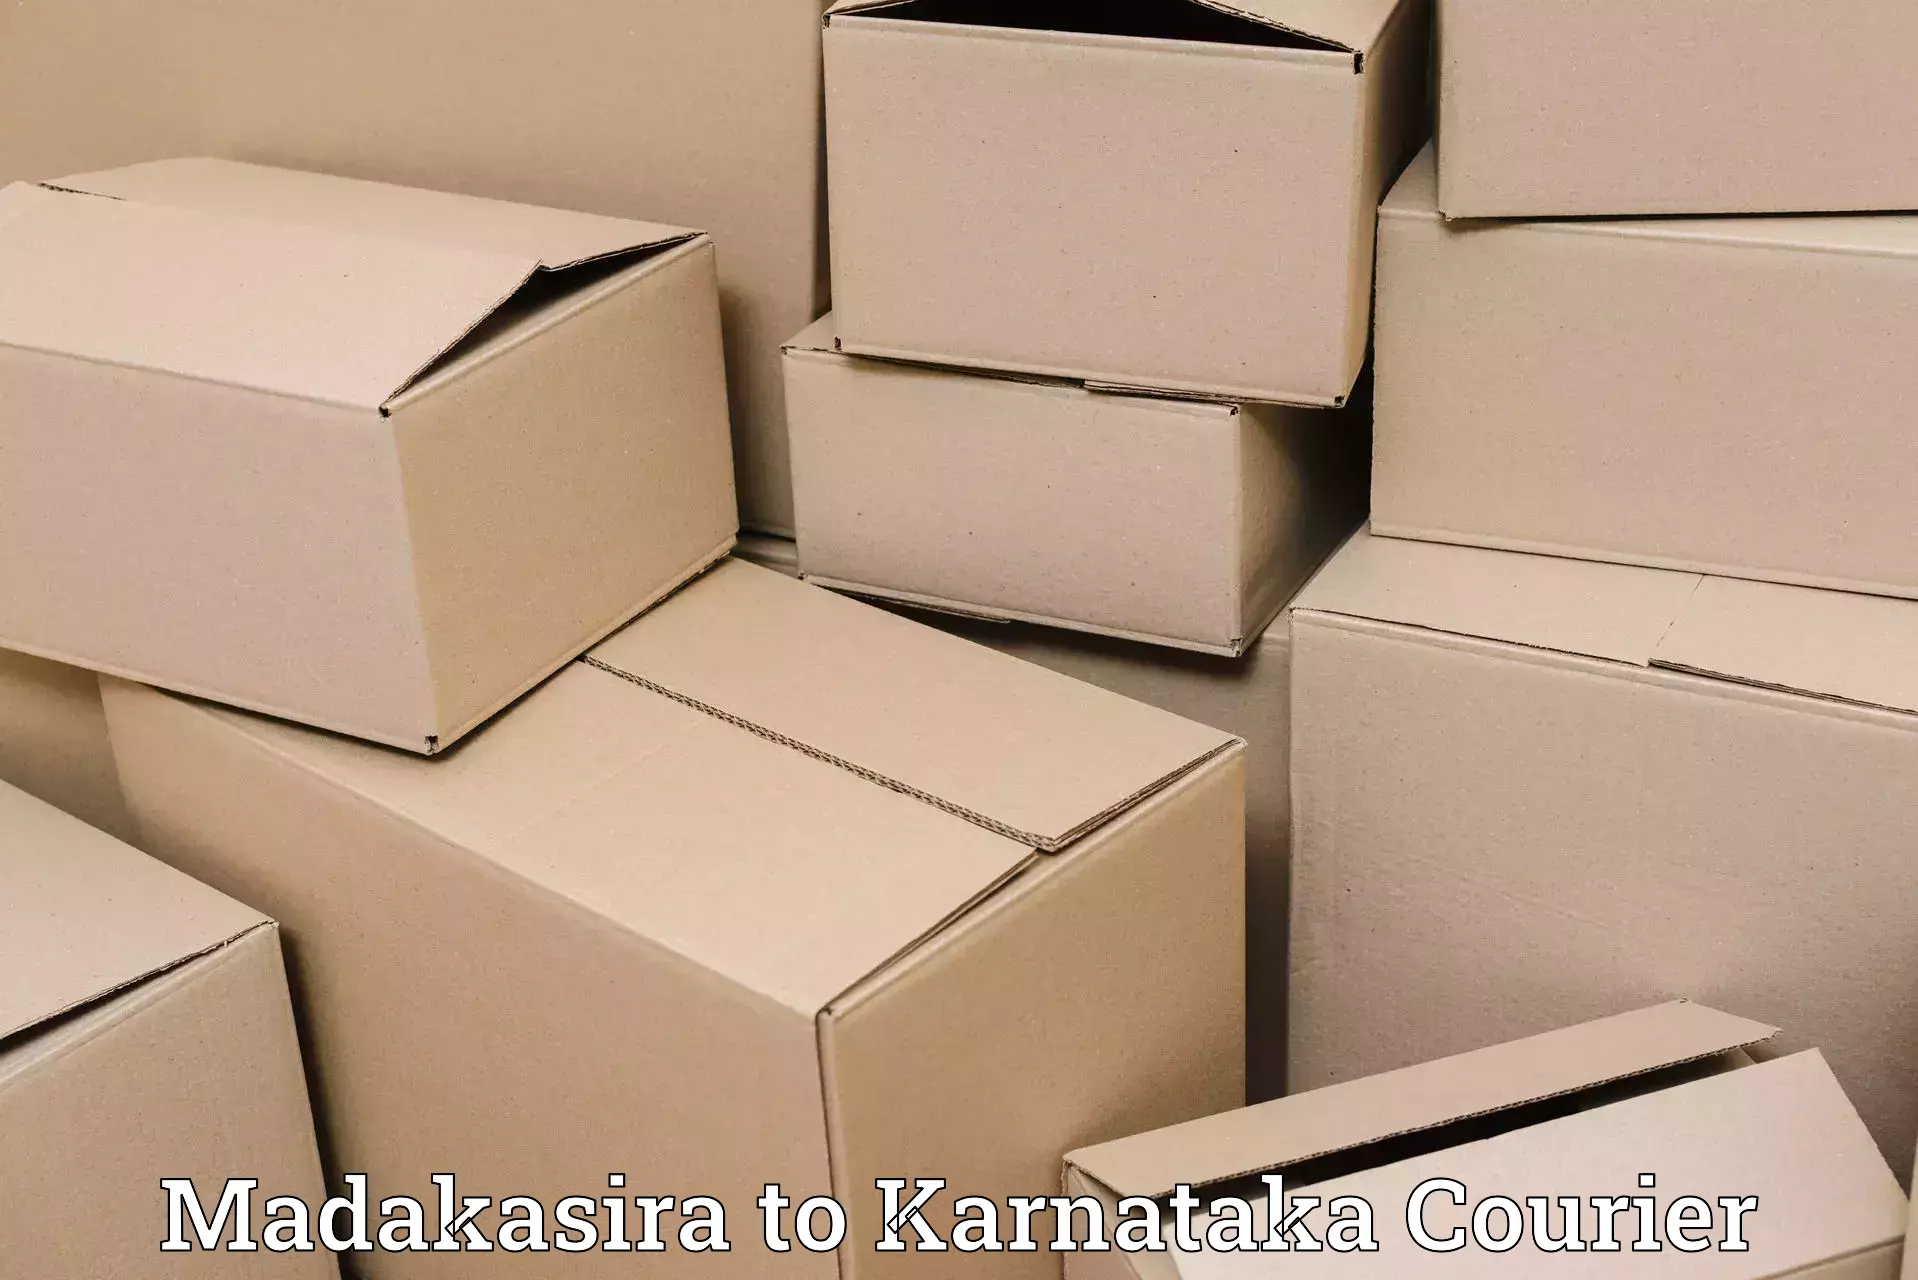 Automated shipping processes Madakasira to Karnataka